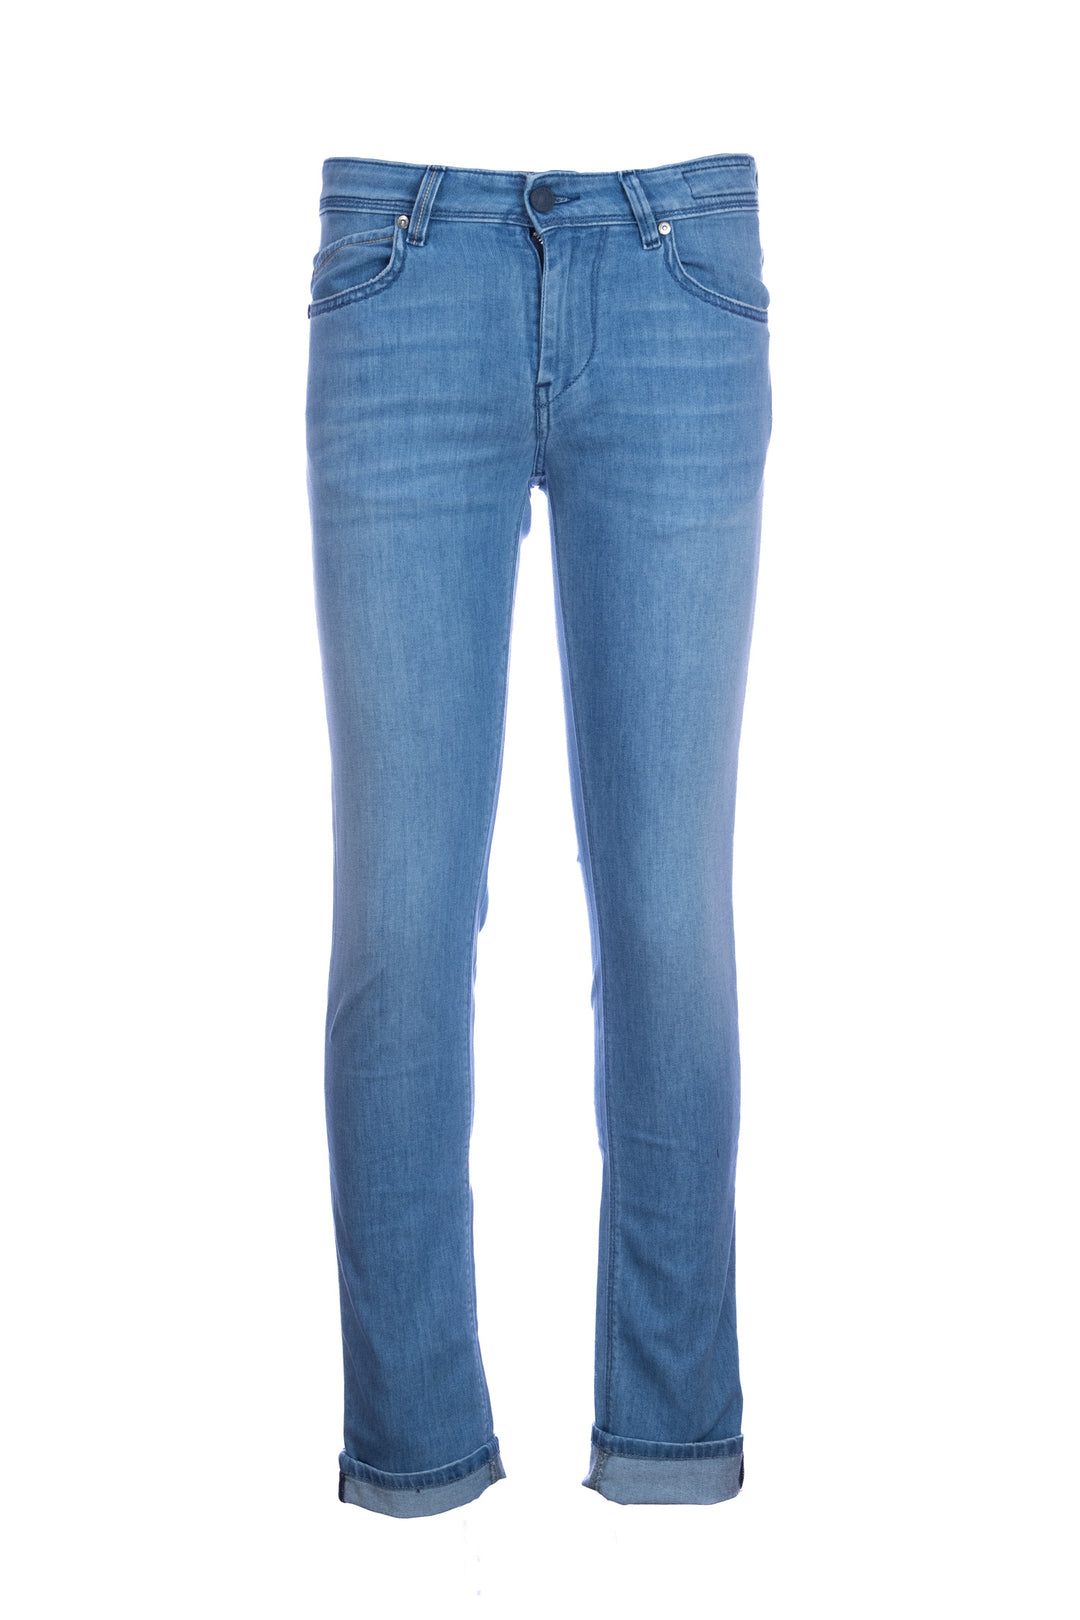 RE-HASH Jeans 5 tasche “RUBENS-Z” in denim stretch lavaggio chiaro 8oz - Mancinelli 1954